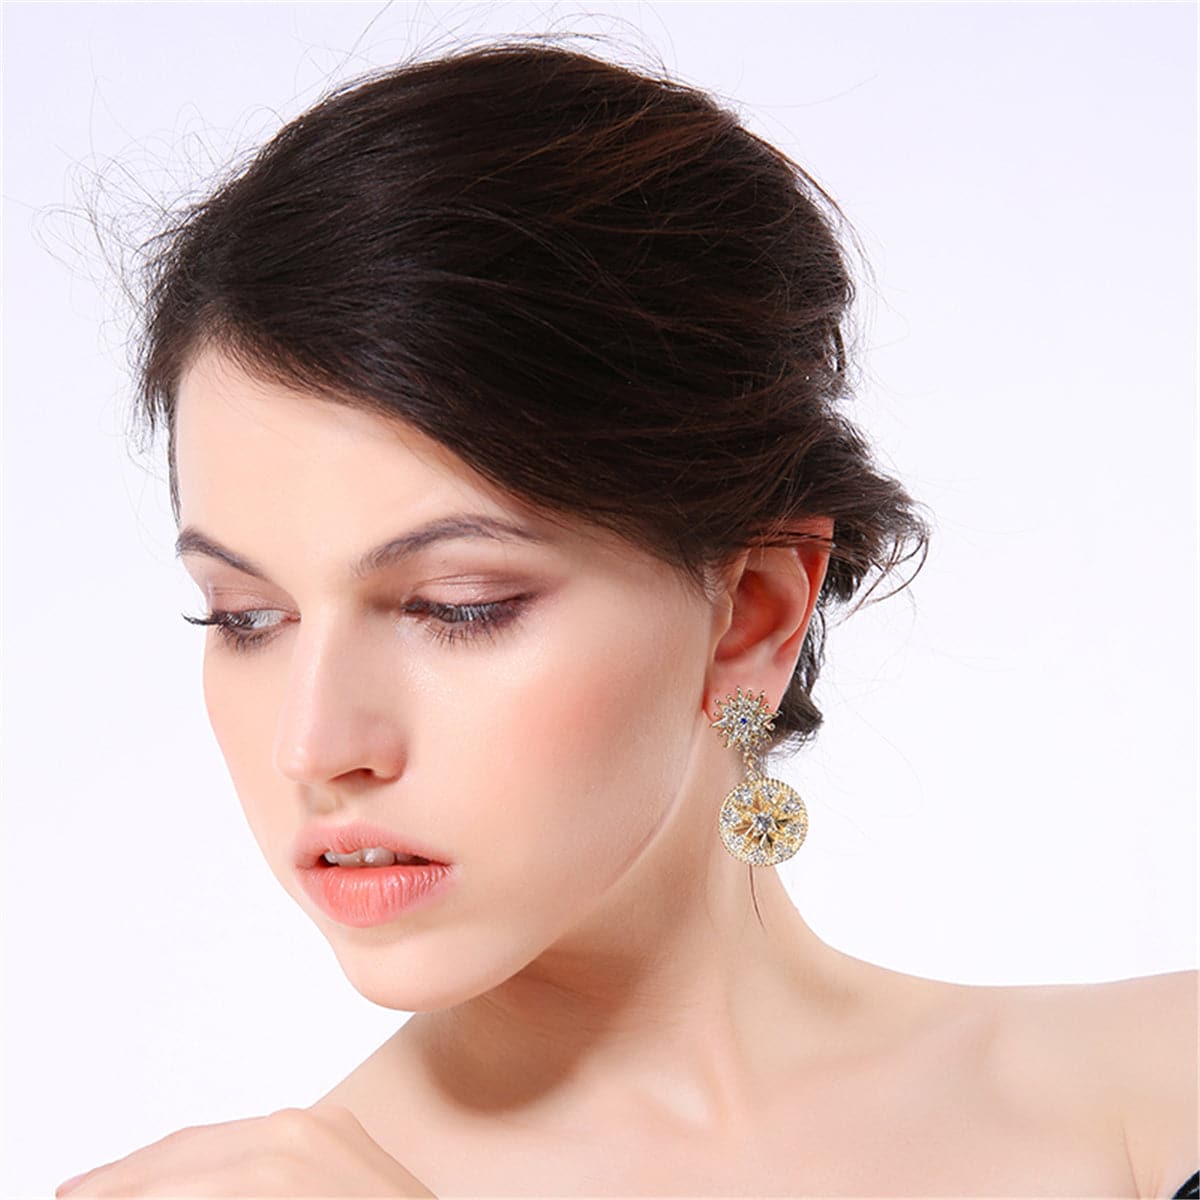 Cubic Zirconia & 18K Gold-Plated Sun & Eye Drop Earrings